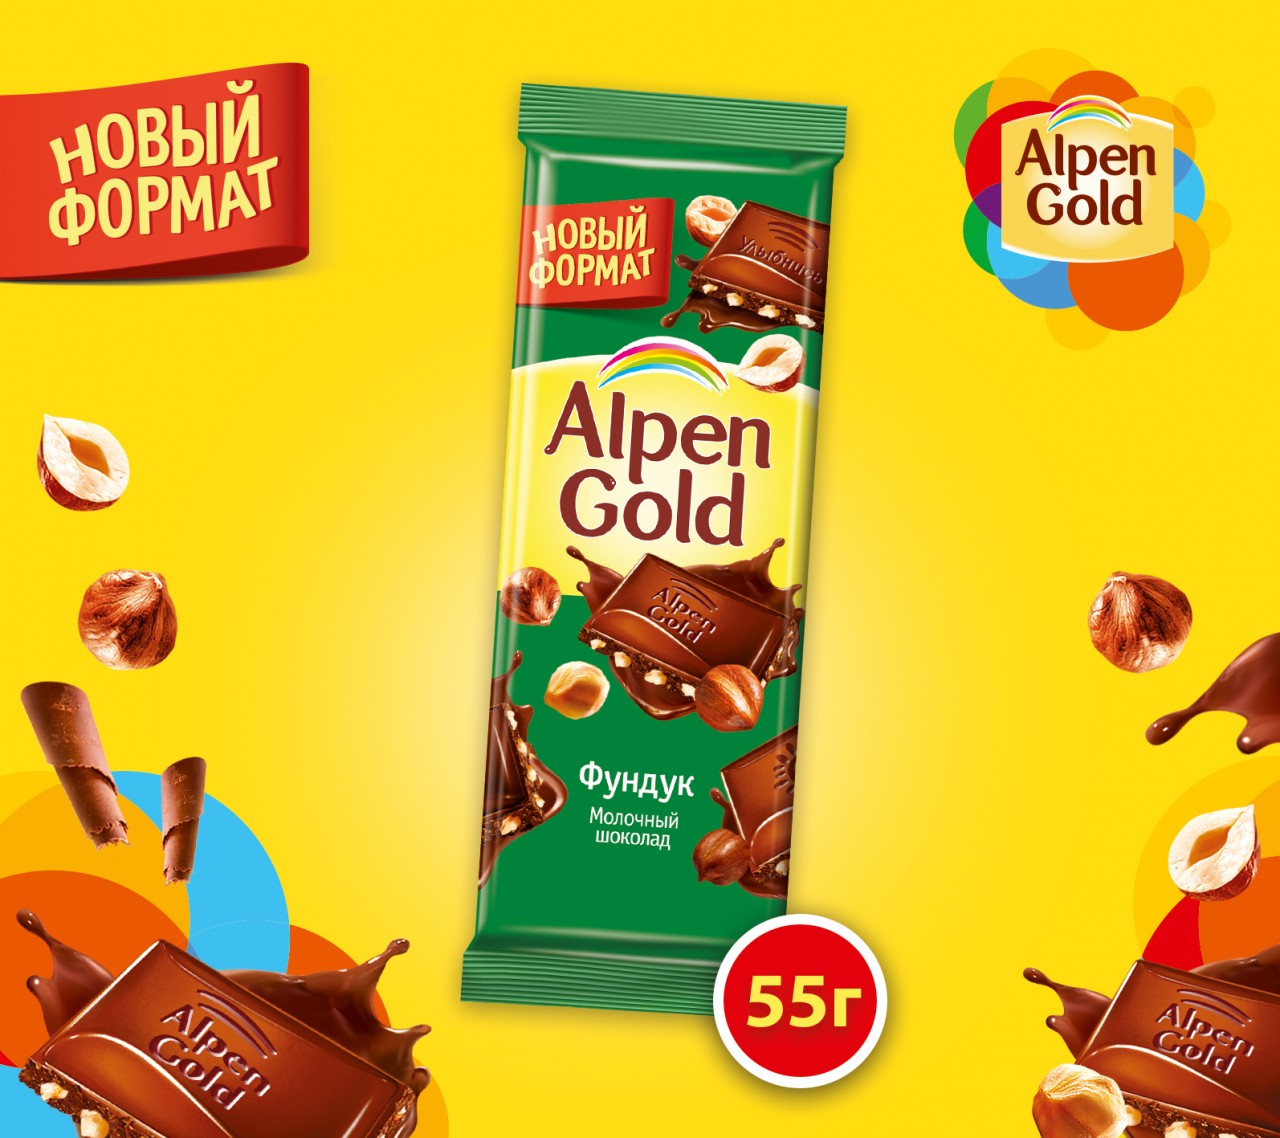 Alpen Gold — теперь в новом формате